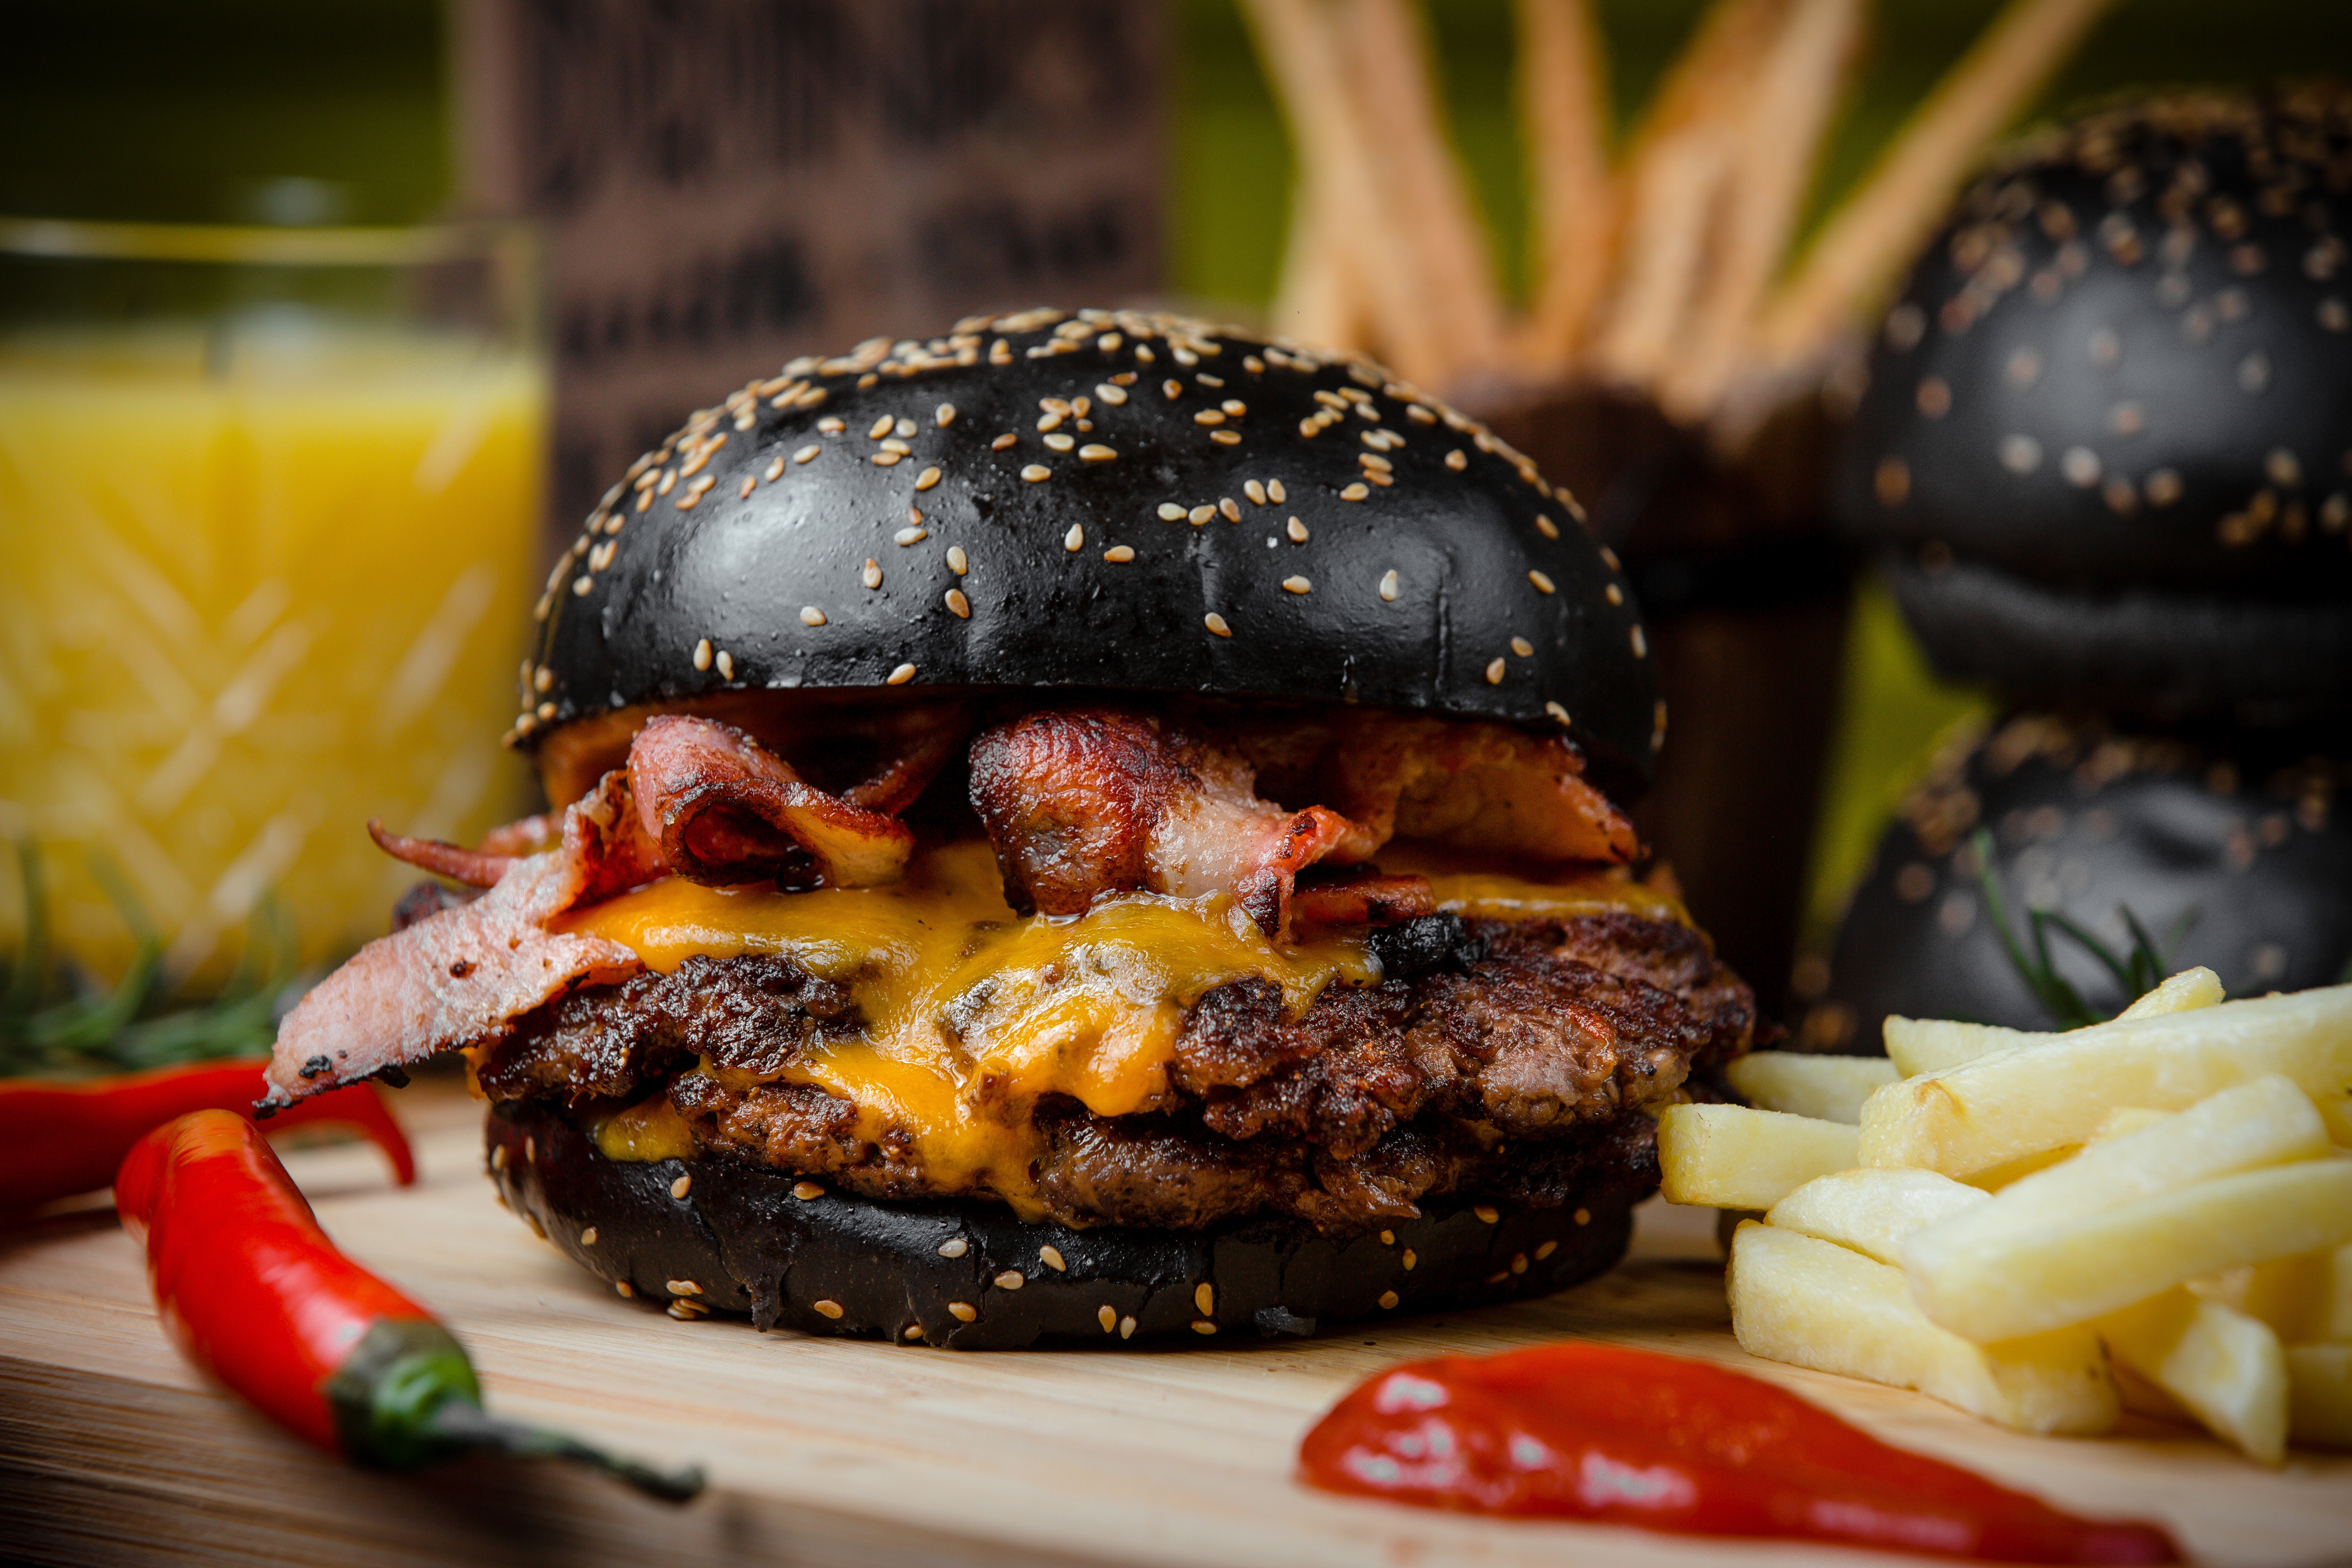 Zastaki.com - Гамбургер с черной булкой на столе с картофелем фри и красным перцем